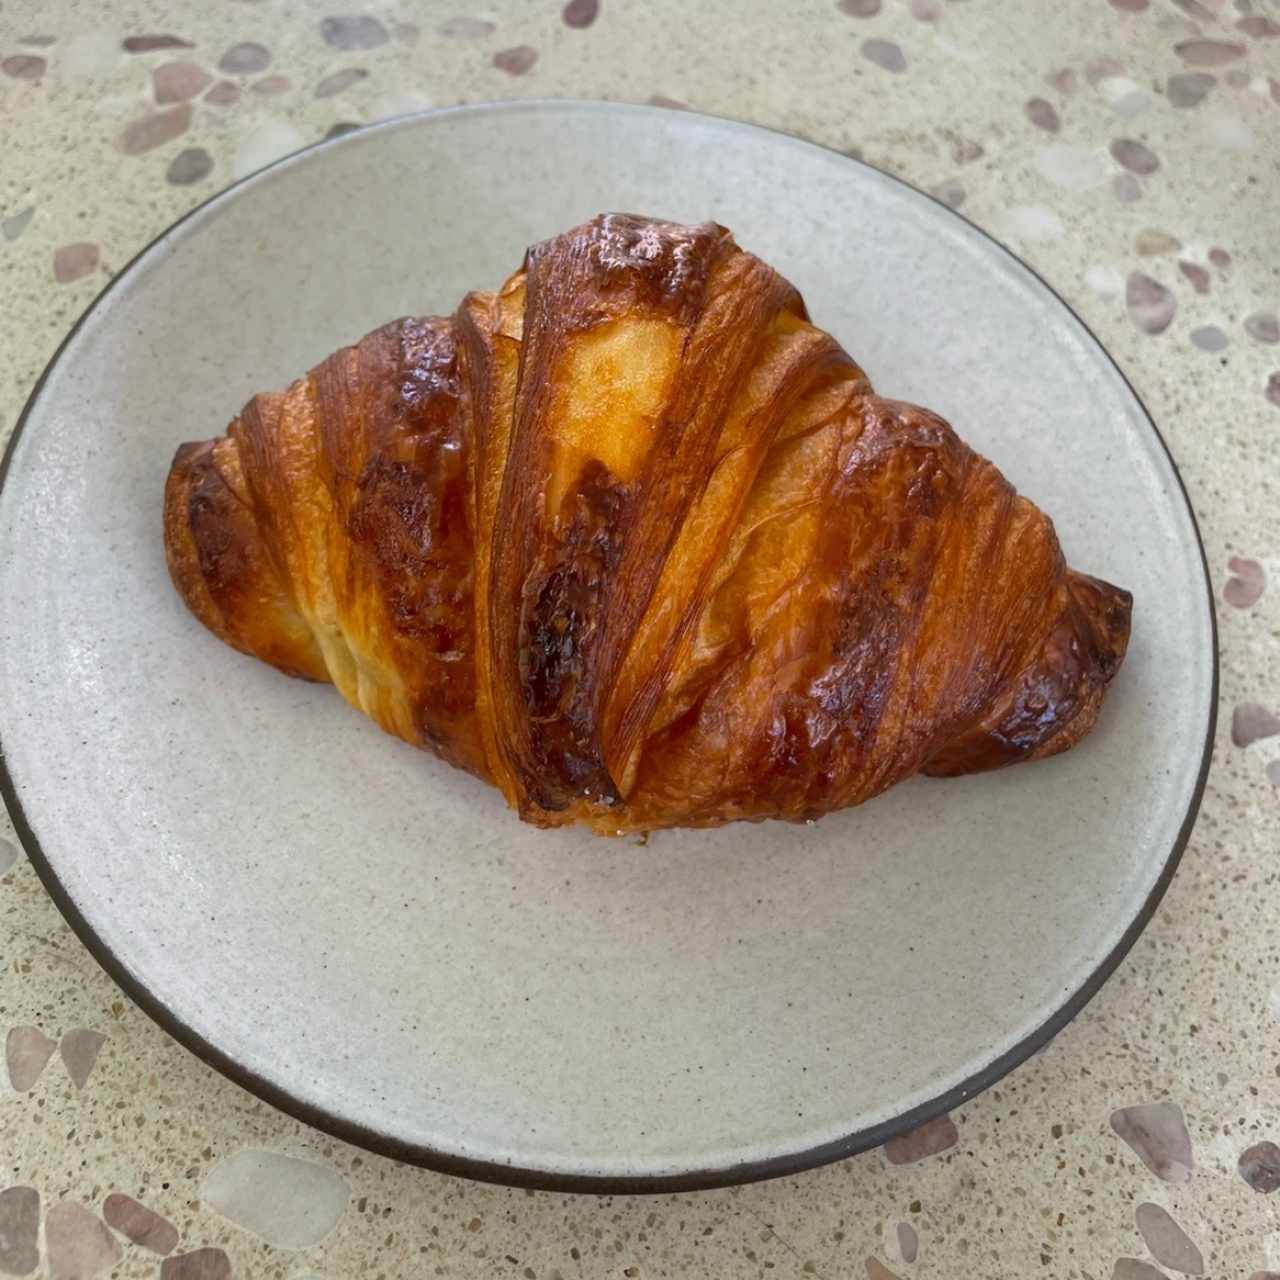 Pastries - Croissants